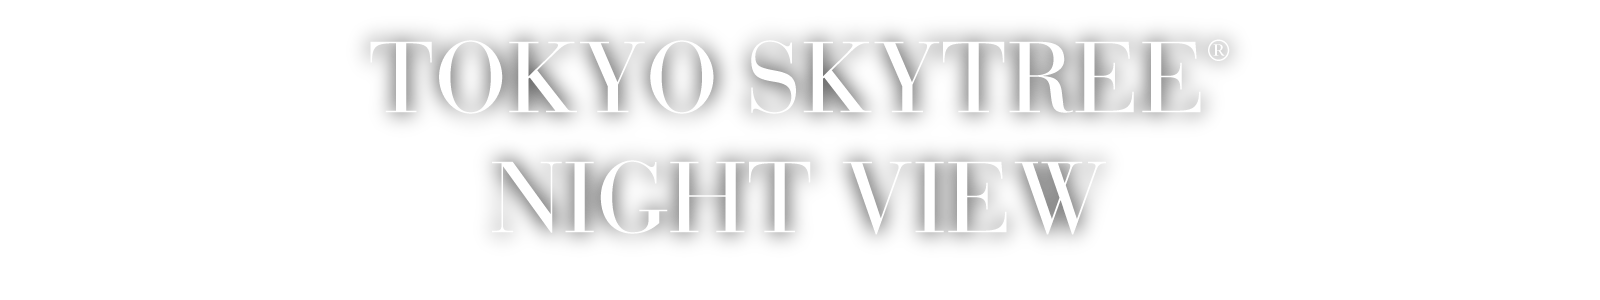 TOKYO SKYTREE® NIGHT VIEW